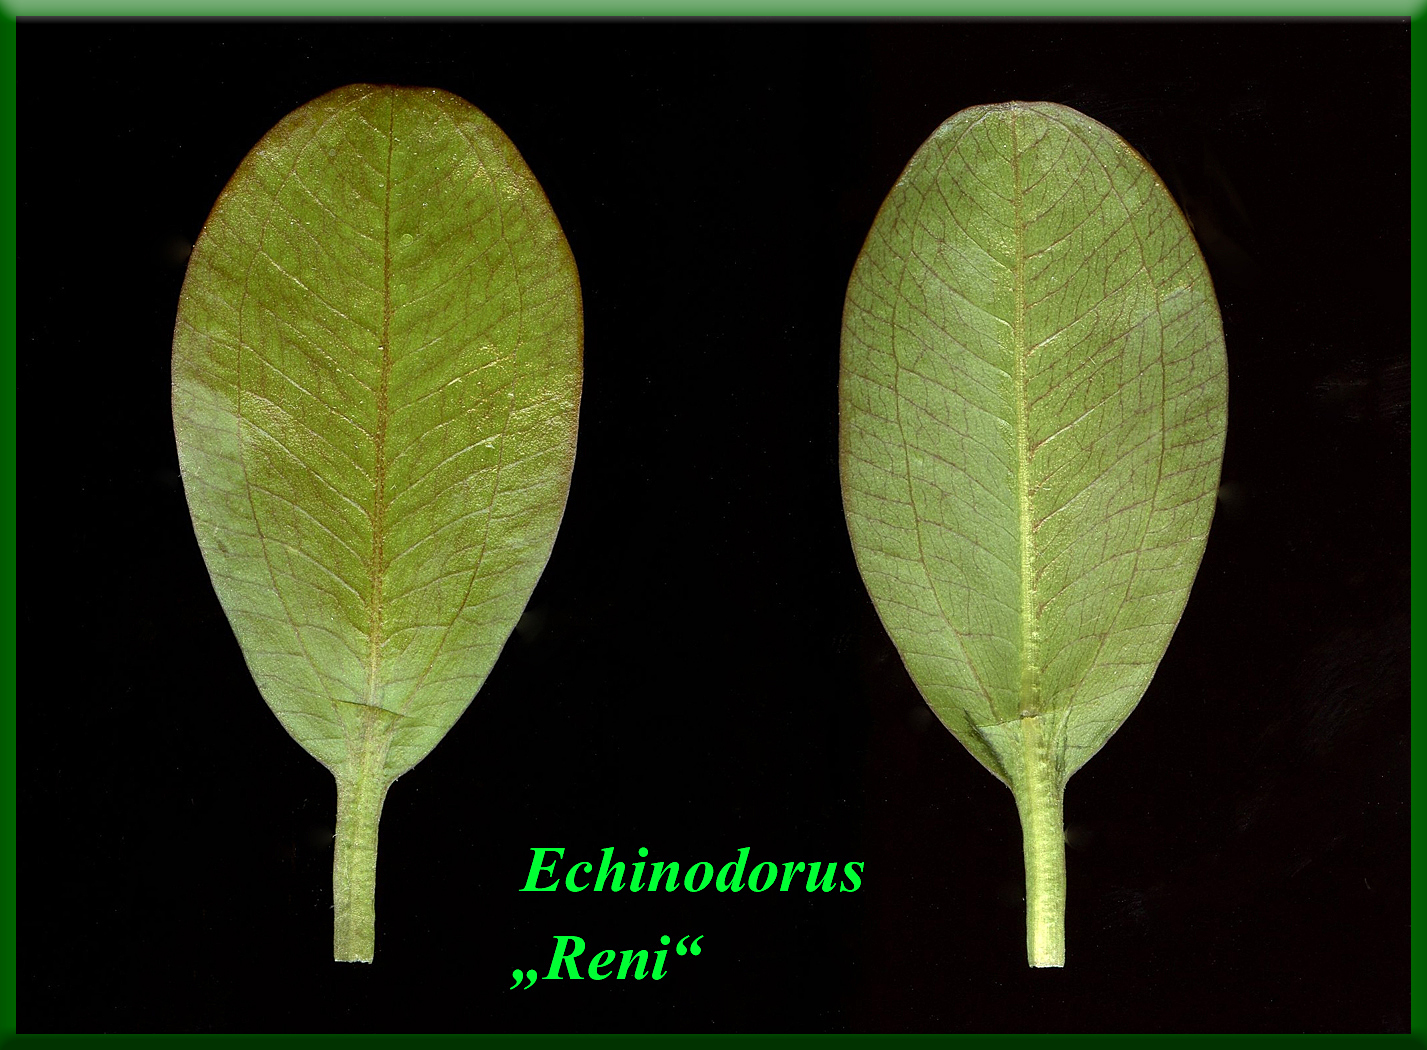 Echinodorus var. Reni